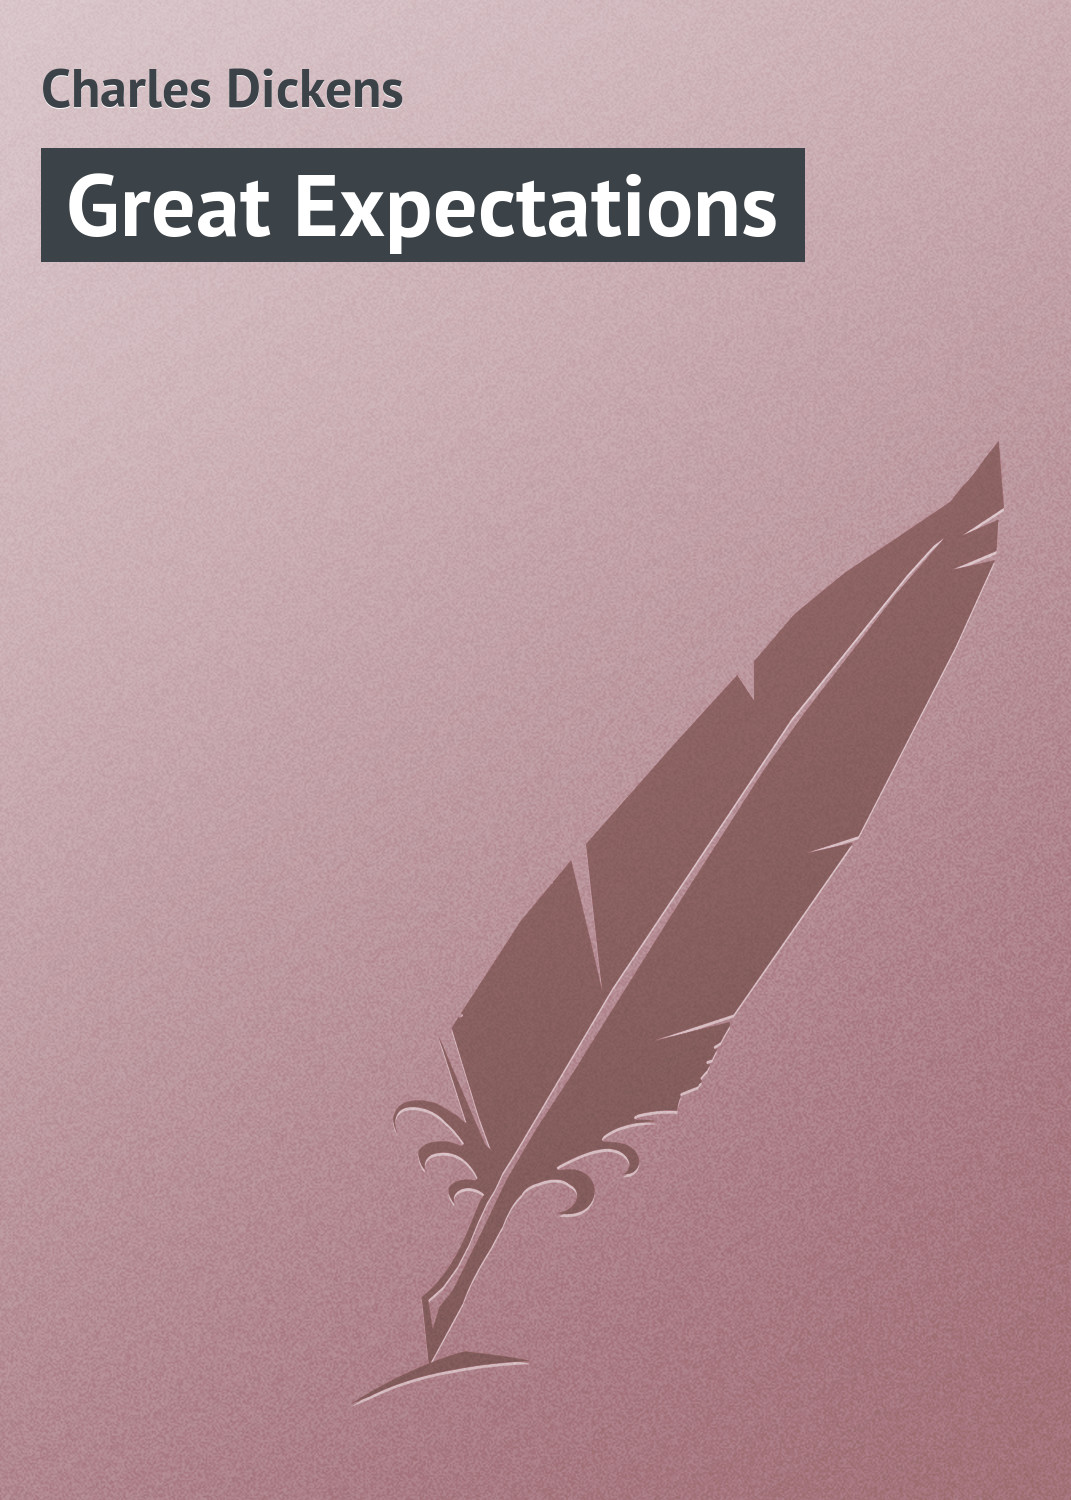 Книга Great Expectations из серии , созданная Charles Dickens, может относится к жанру Зарубежная старинная литература, Зарубежная классика. Стоимость электронной книги Great Expectations с идентификатором 21103422 составляет 5.99 руб.